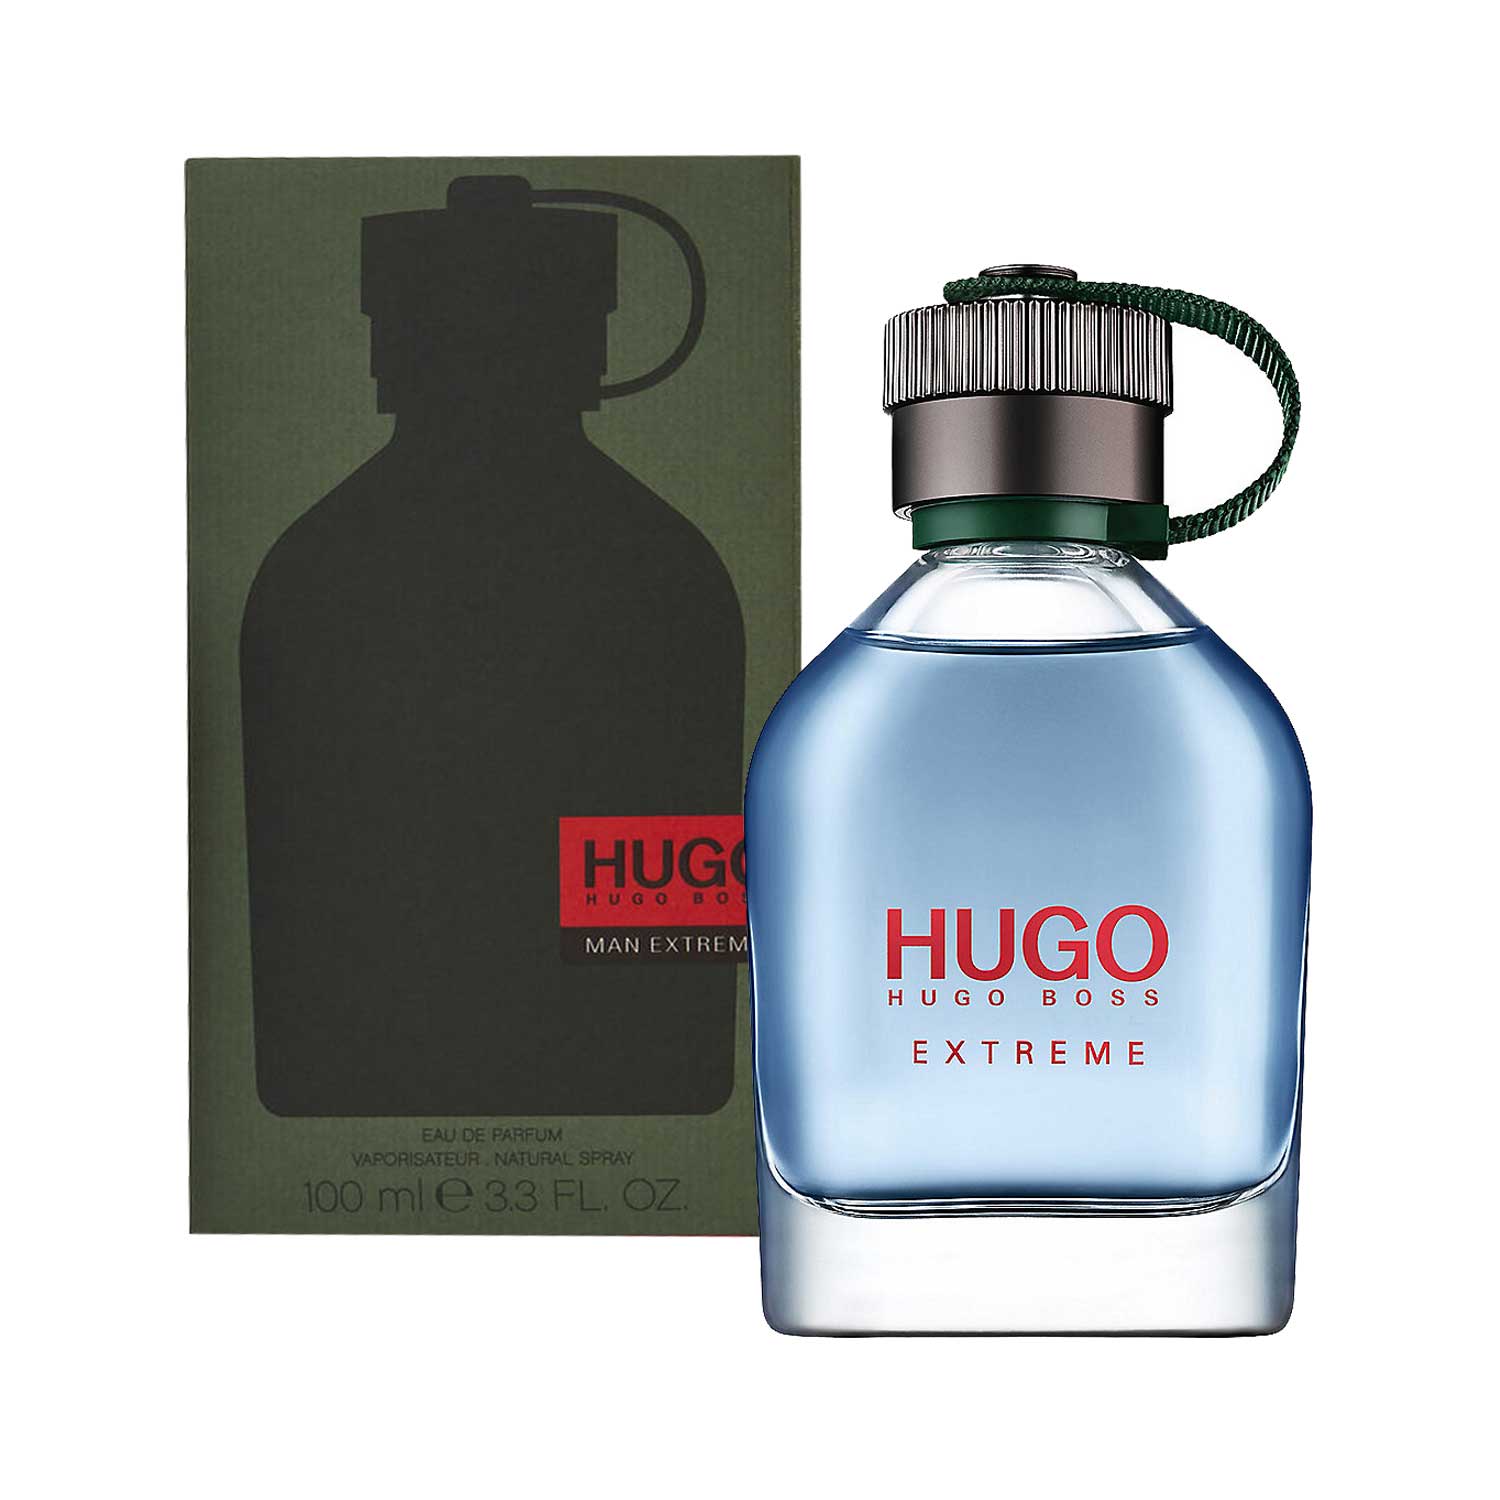 HUGO MAN EXTREME EAU DE PARFUM, 100ML 